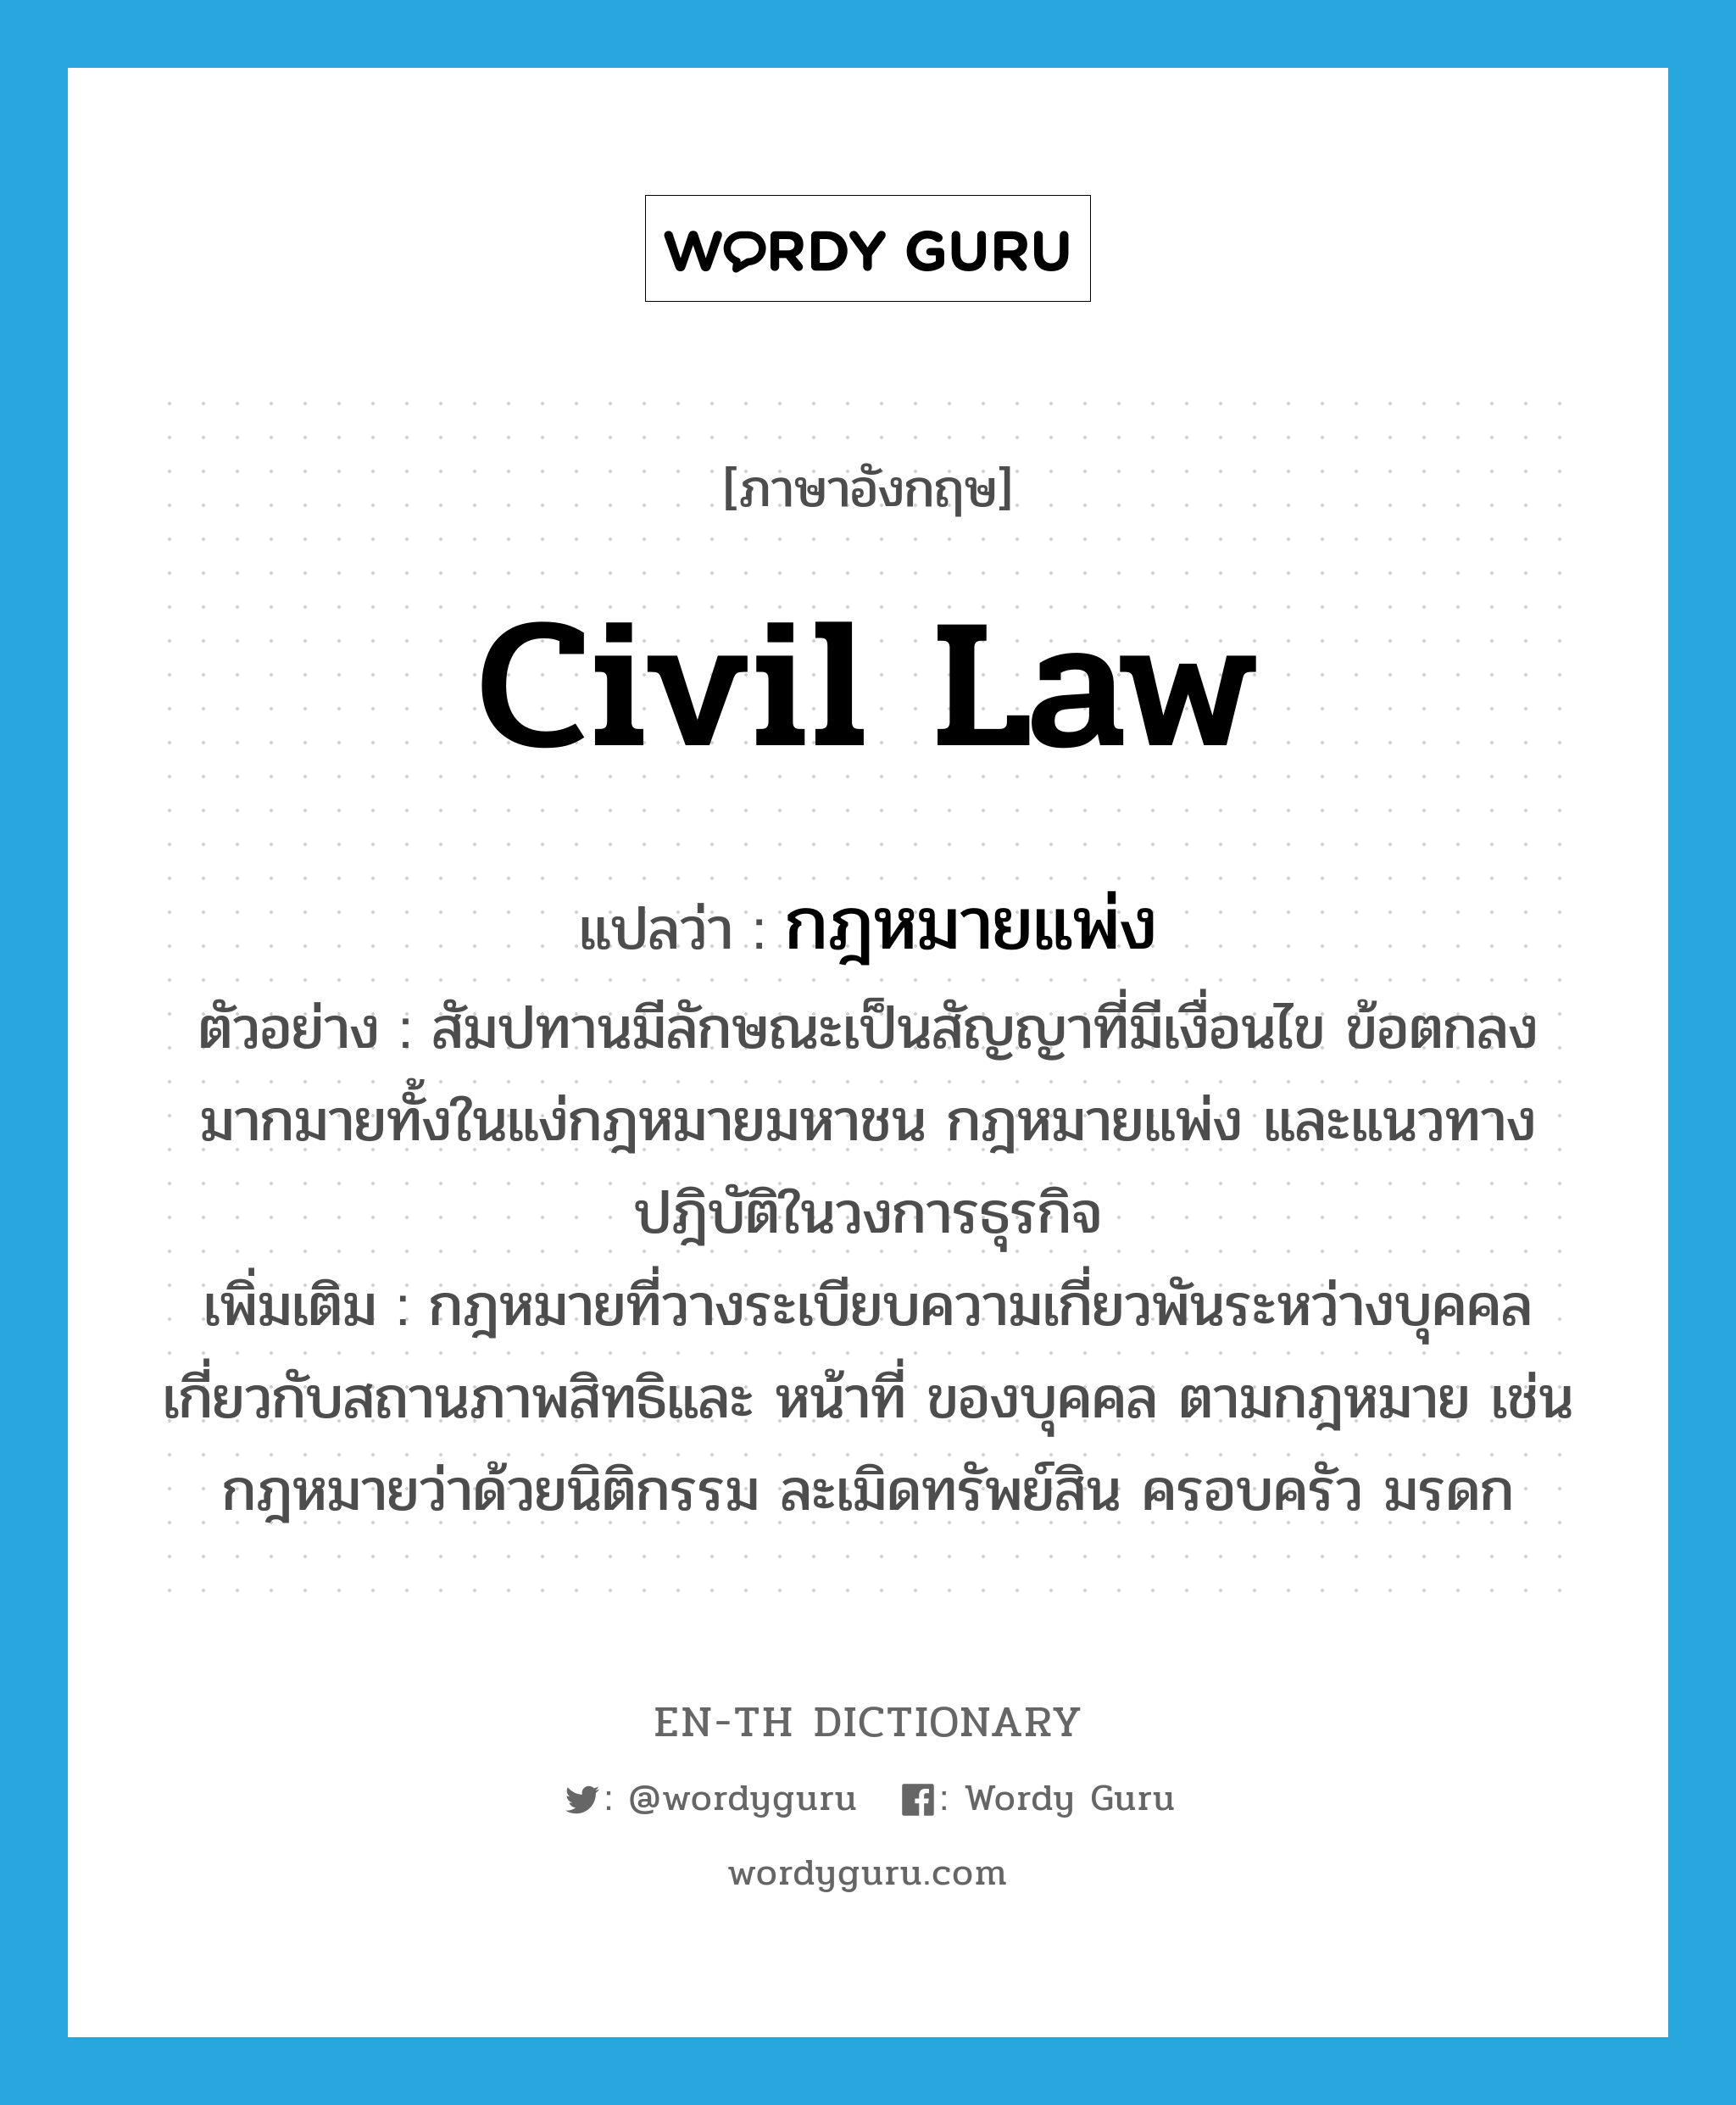 civil law แปลว่า?, คำศัพท์ภาษาอังกฤษ civil law แปลว่า กฎหมายแพ่ง ประเภท N ตัวอย่าง สัมปทานมีลักษณะเป็นสัญญาที่มีเงื่อนไข ข้อตกลงมากมายทั้งในแง่กฎหมายมหาชน กฎหมายแพ่ง และแนวทางปฎิบัติในวงการธุรกิจ เพิ่มเติม กฎหมายที่วางระเบียบความเกี่ยวพันระหว่างบุคคล เกี่ยวกับสถานภาพสิทธิและ หน้าที่ ของบุคคล ตามกฎหมาย เช่น กฎหมายว่าด้วยนิติกรรม ละเมิดทรัพย์สิน ครอบครัว มรดก หมวด N